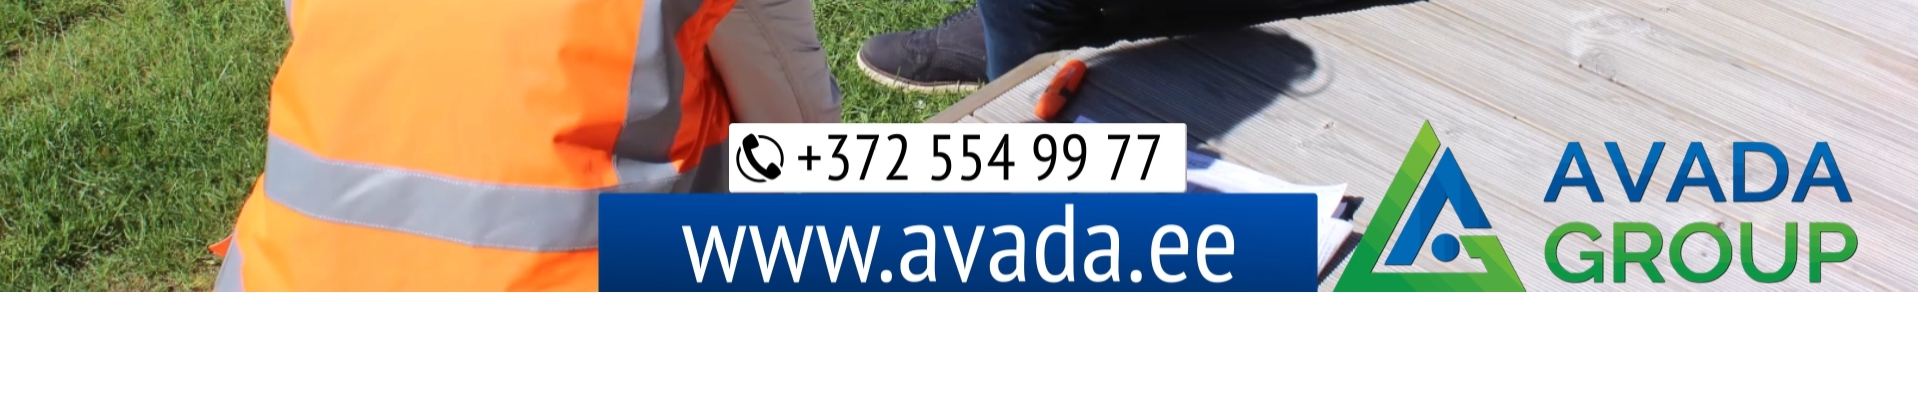 Ehitus- ja maastikuettevõte «Avada Group OÜ  » tegutseb turul alates 2014. aastast.
Ettevõte pakub kogu maastikutööde tsüklit Eestis.